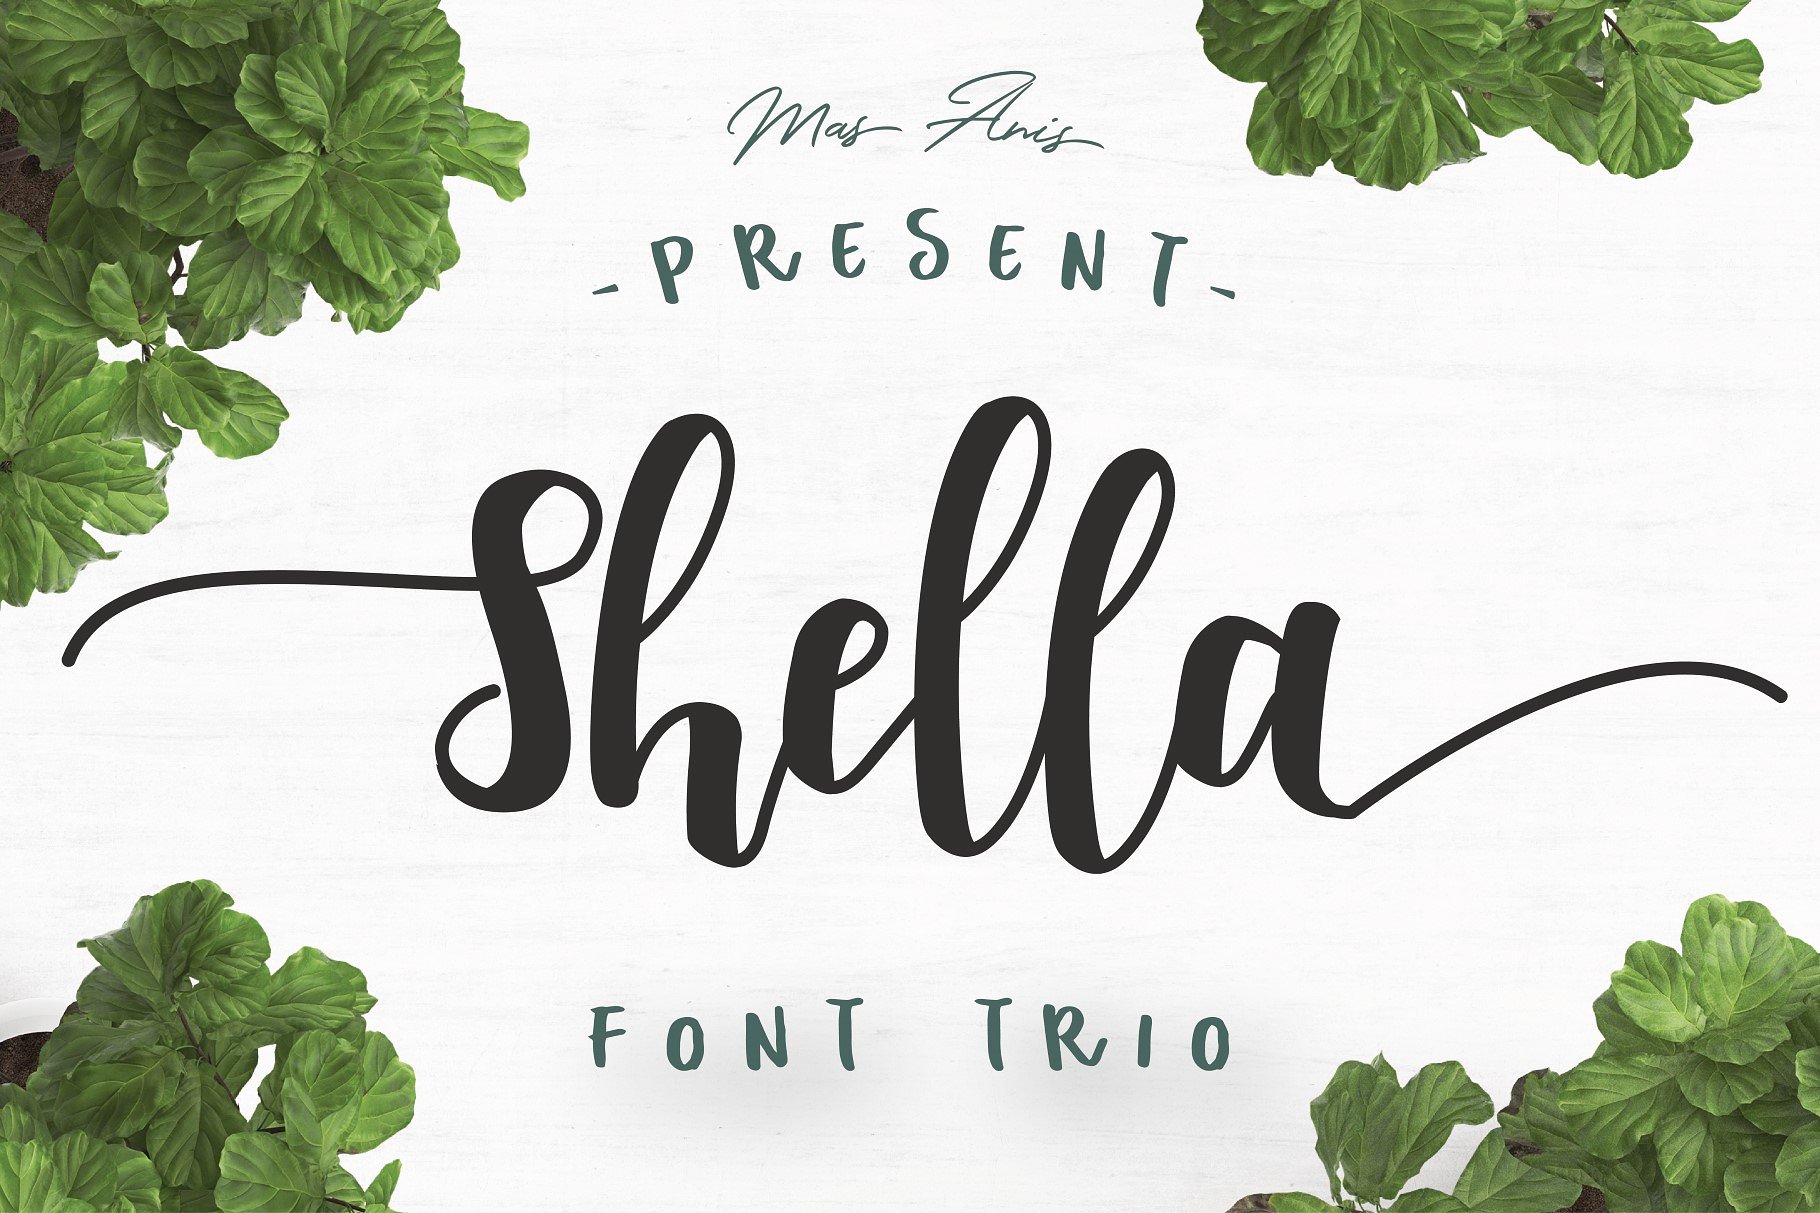 Shella Clean font